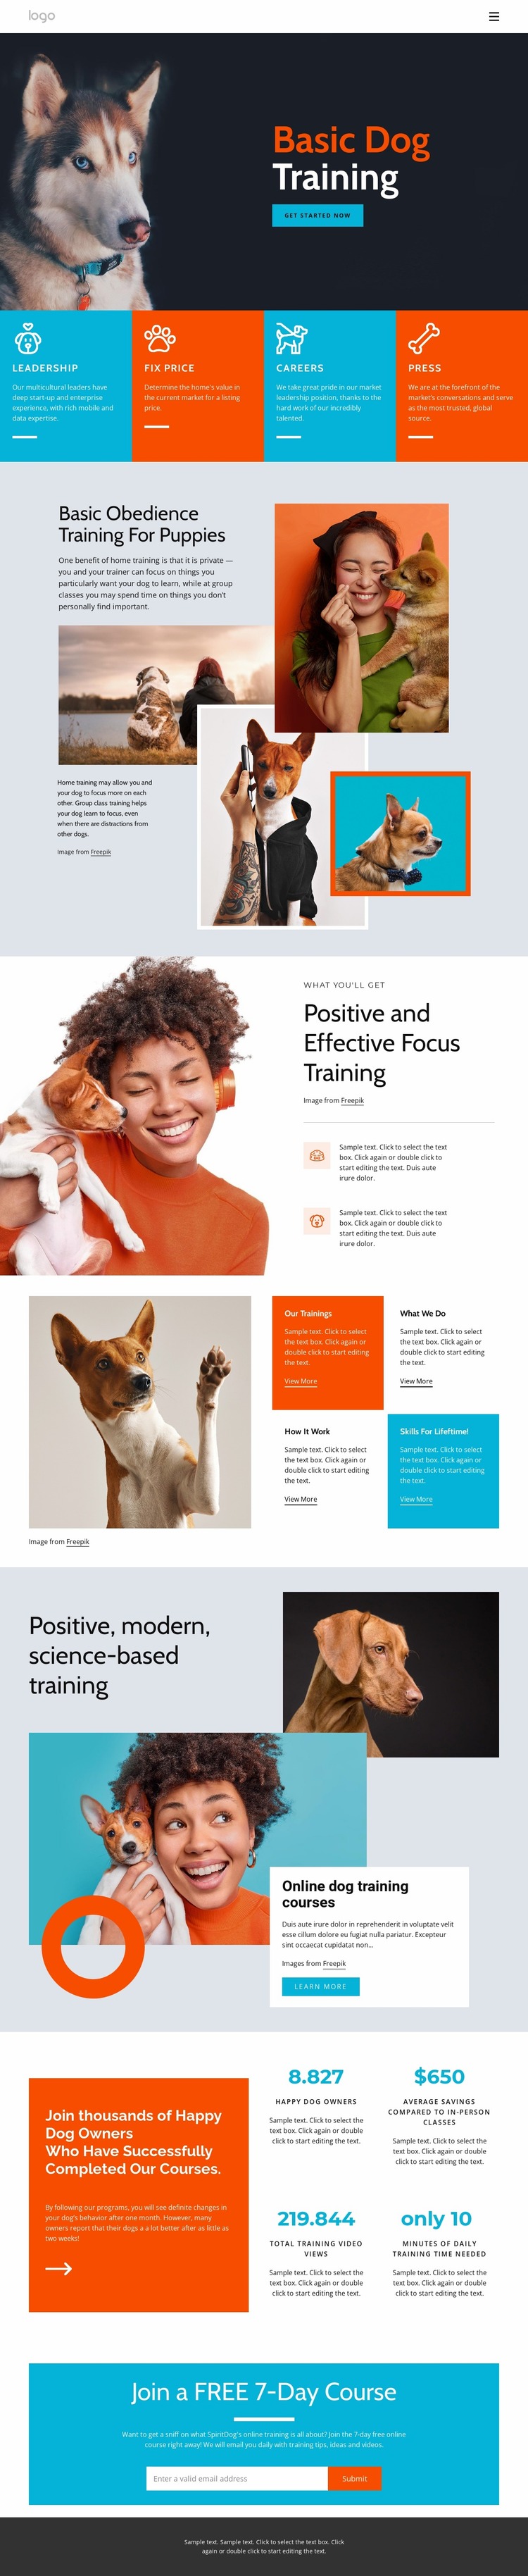 Dog training courses Website Mockup